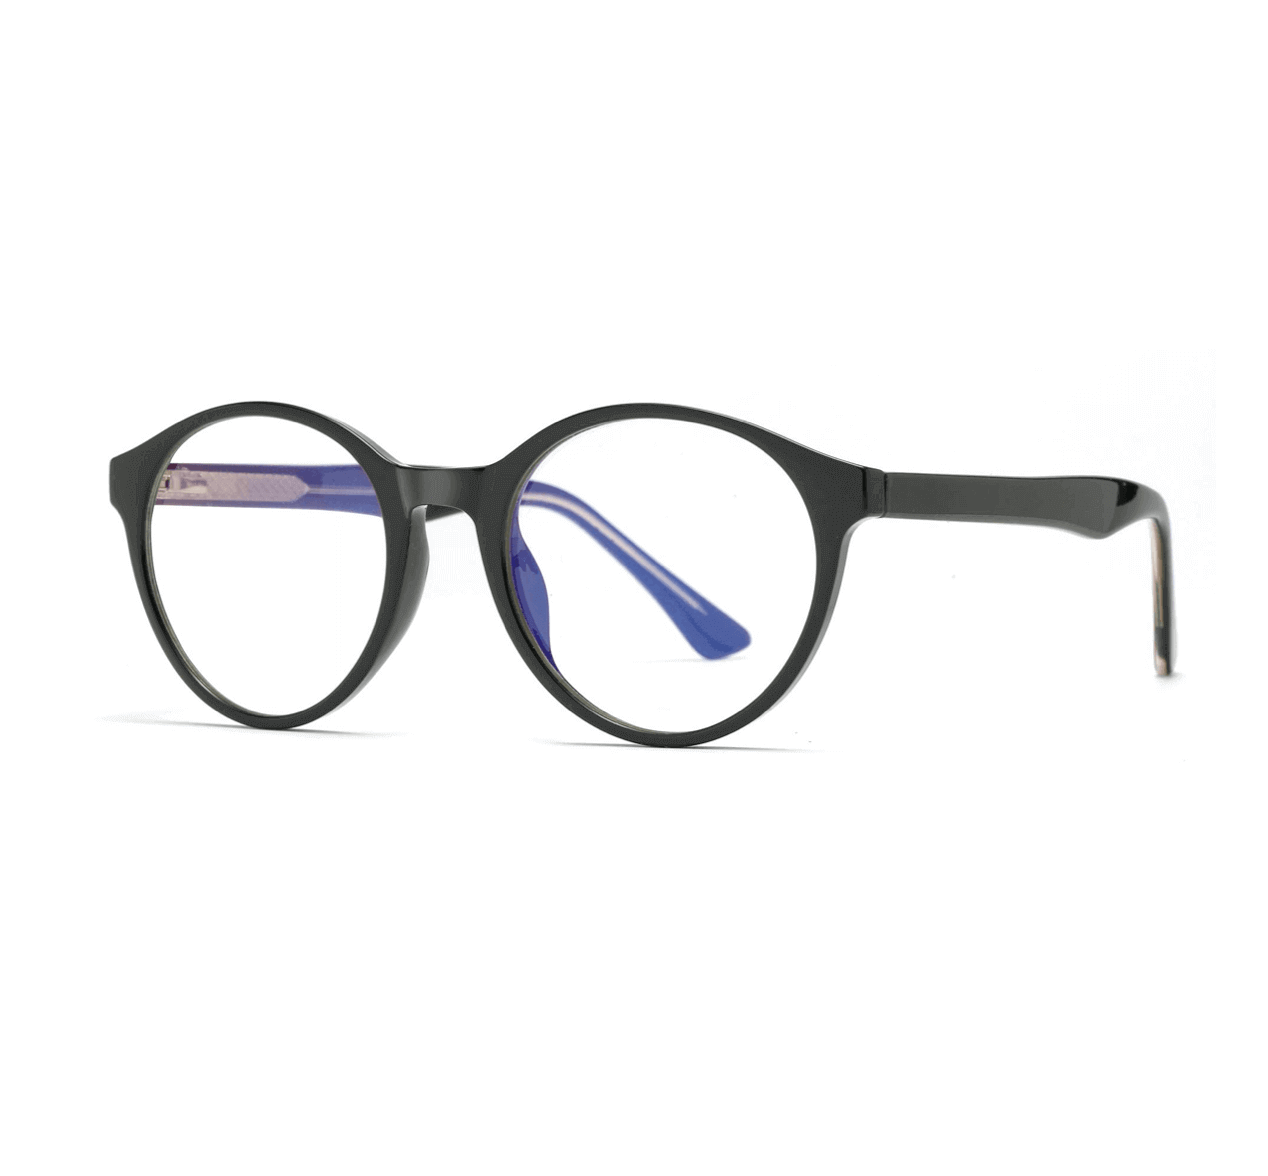 customm blue light glasses for gaming, blue light glasses manufacturer, blue light glasses China